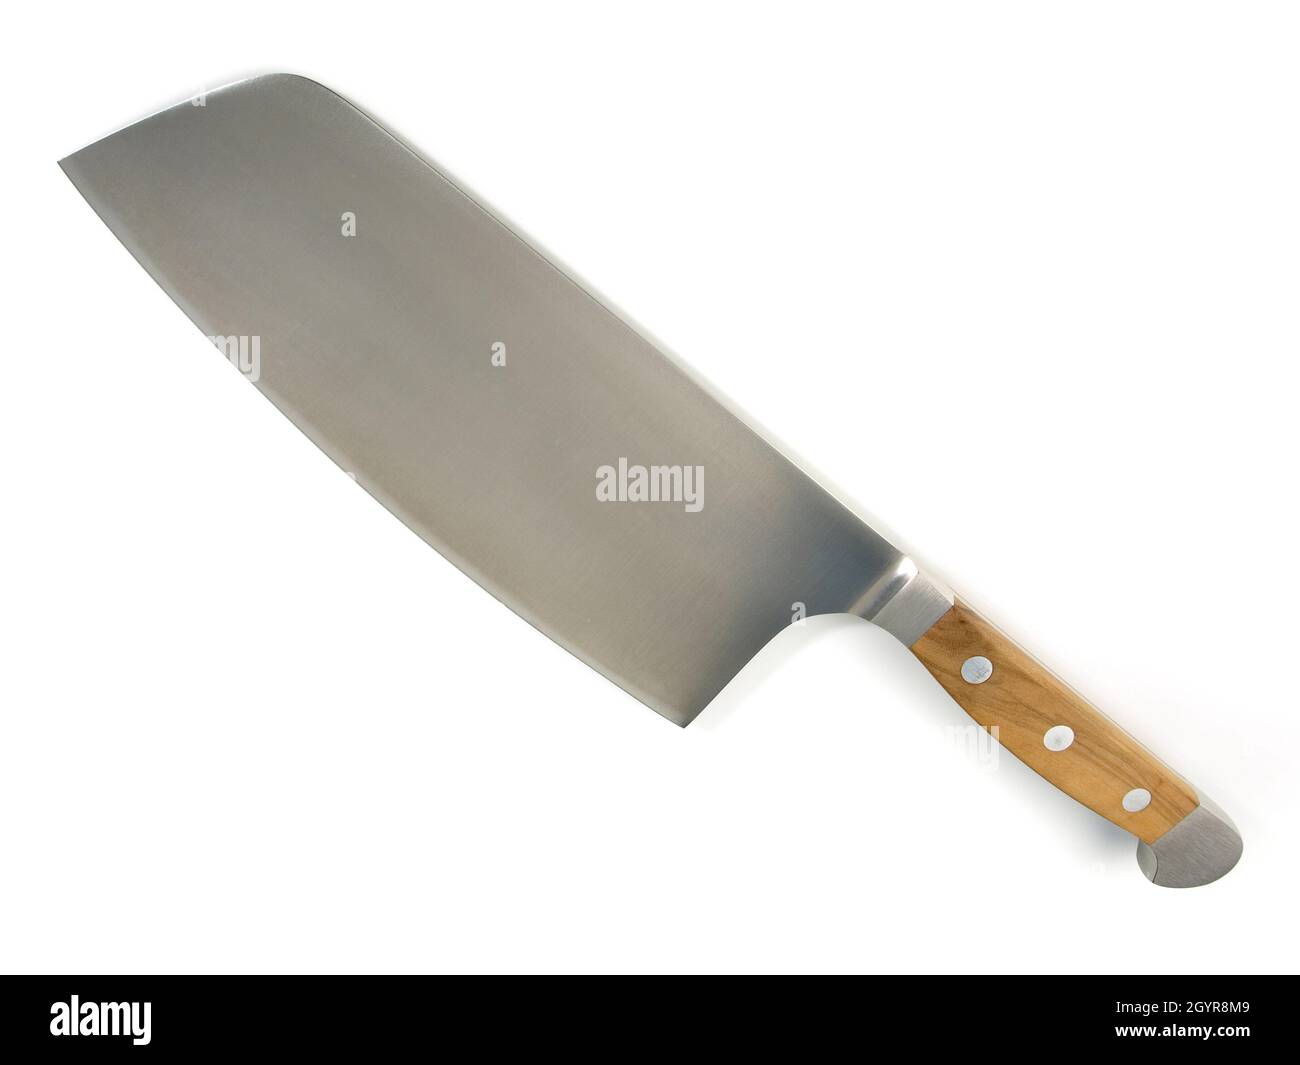 Couteau de cuisine asiatique, isolé sur fond blanc.Un couperet chinois pour les chefs professionnels. Banque D'Images